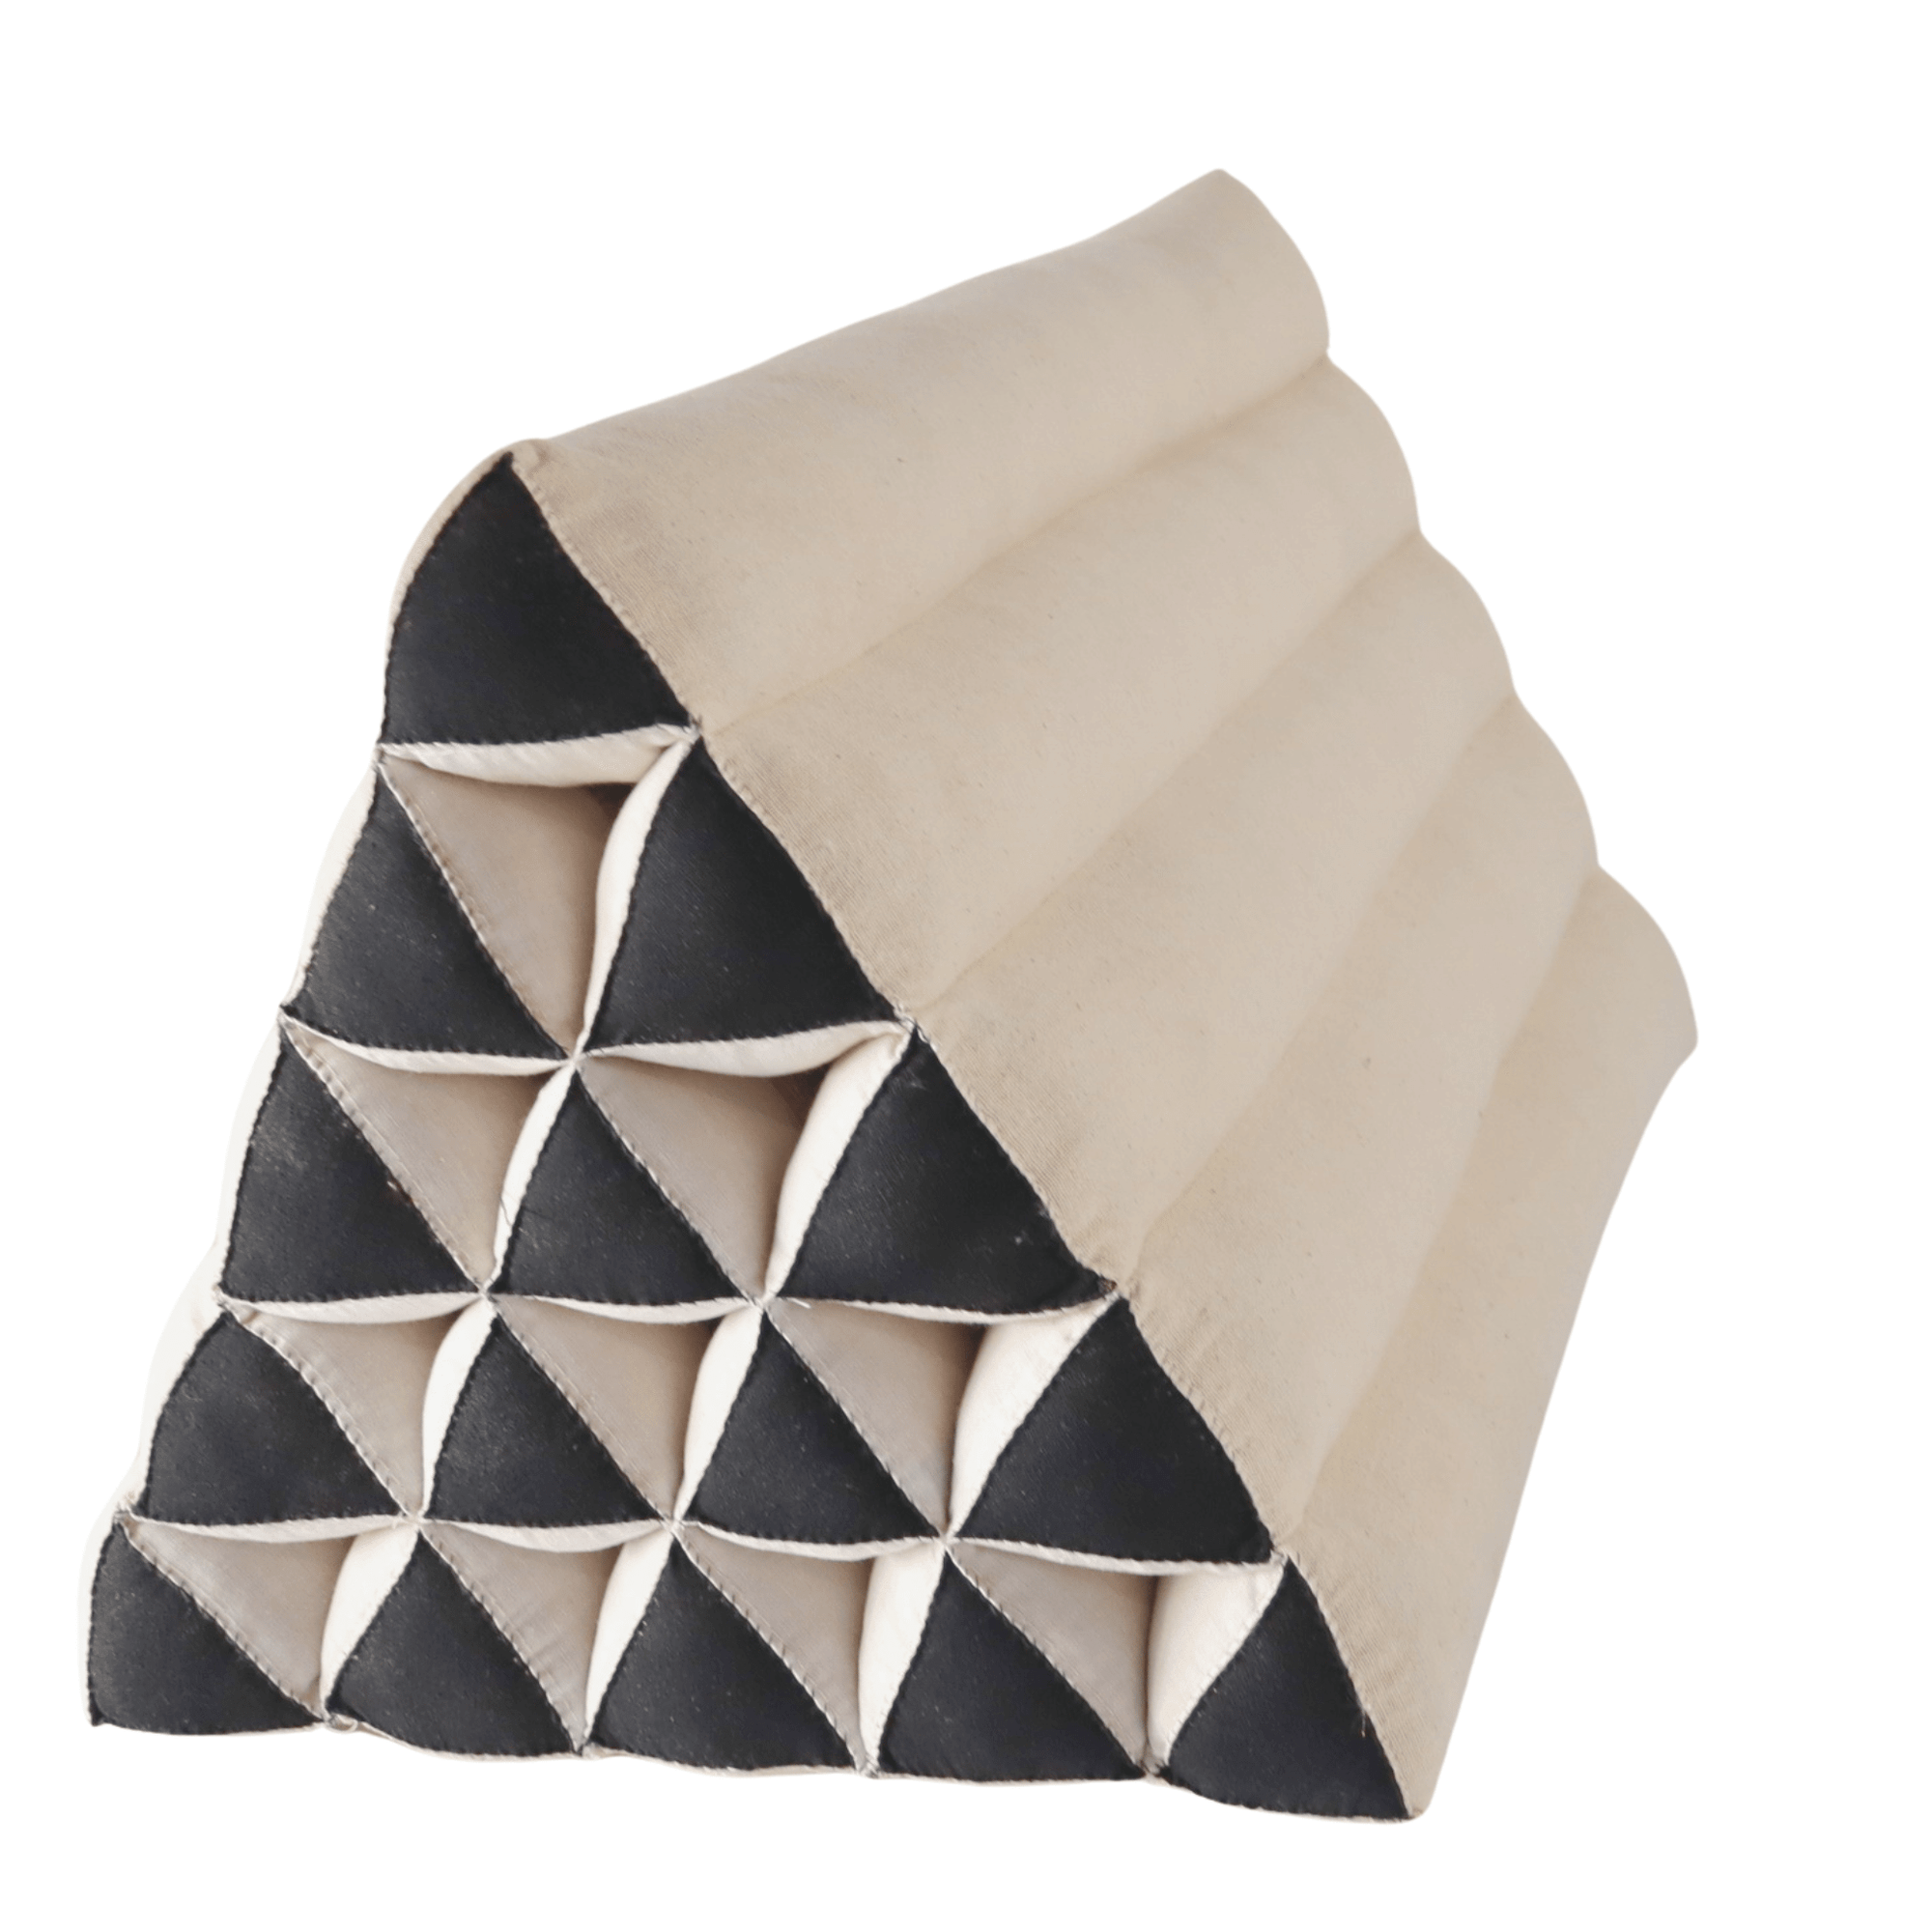 KA MON CHAN - Thai Triangle Cushion (White and Black)